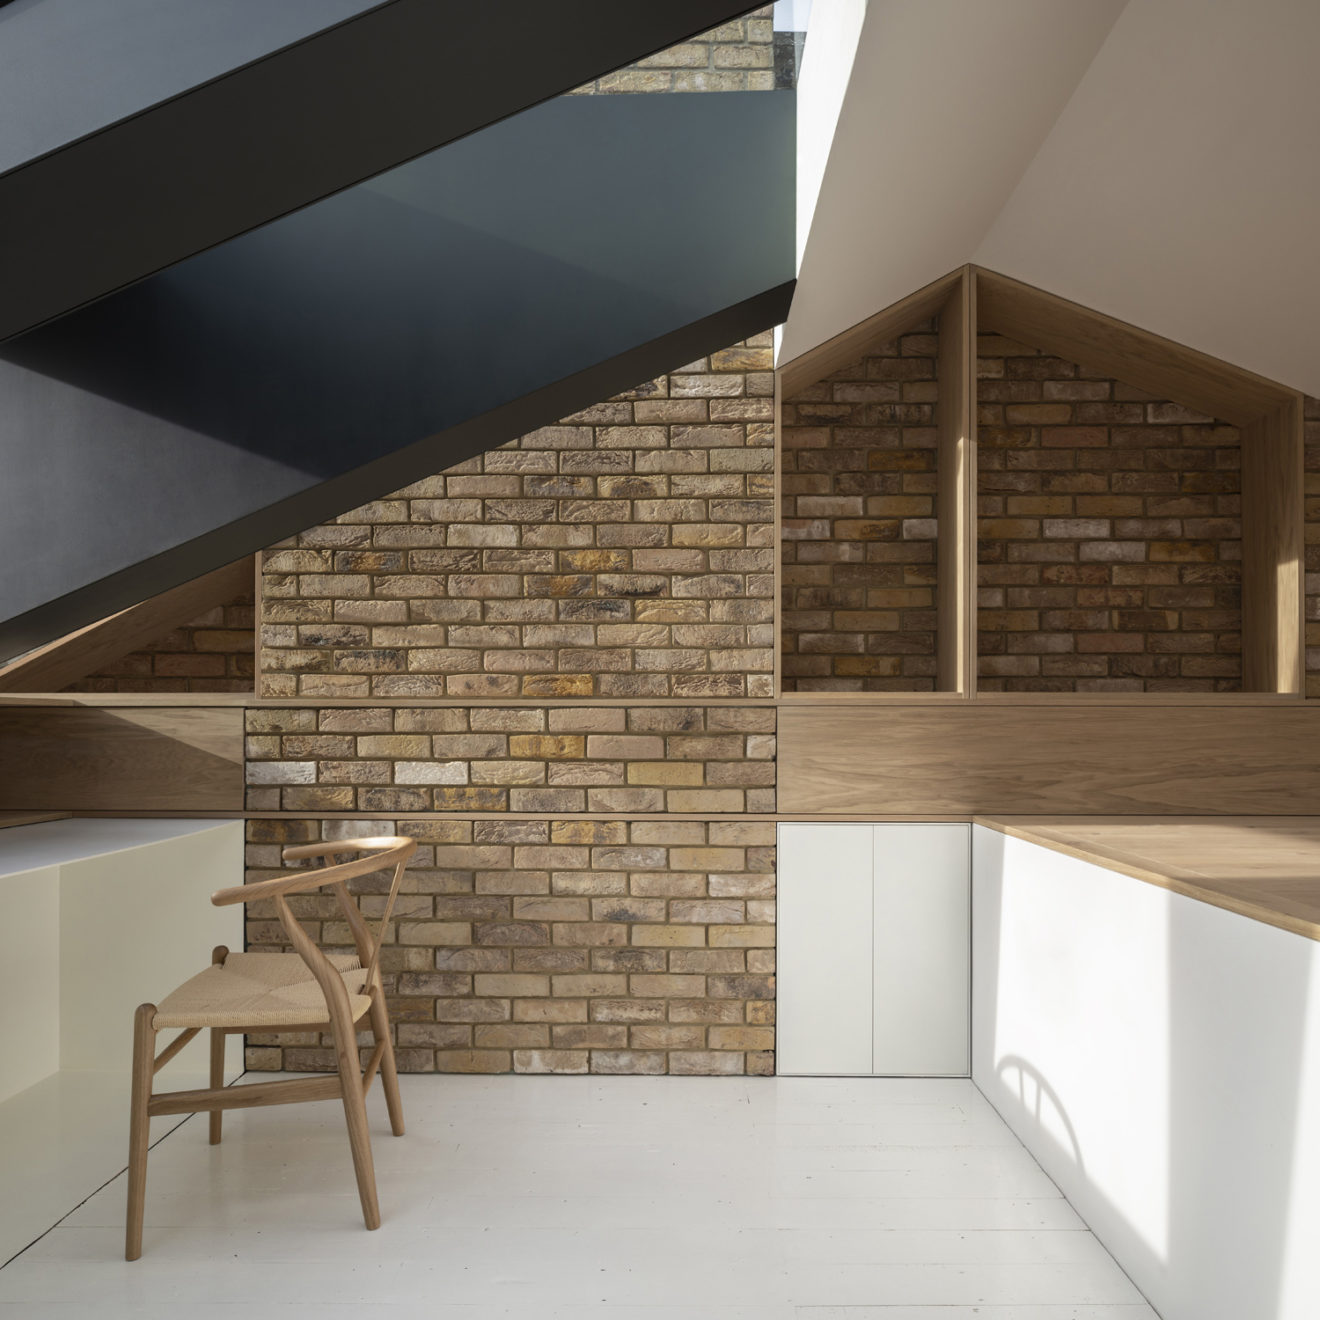 dormore by stale eriksen - conform architects - aucoot estate agents